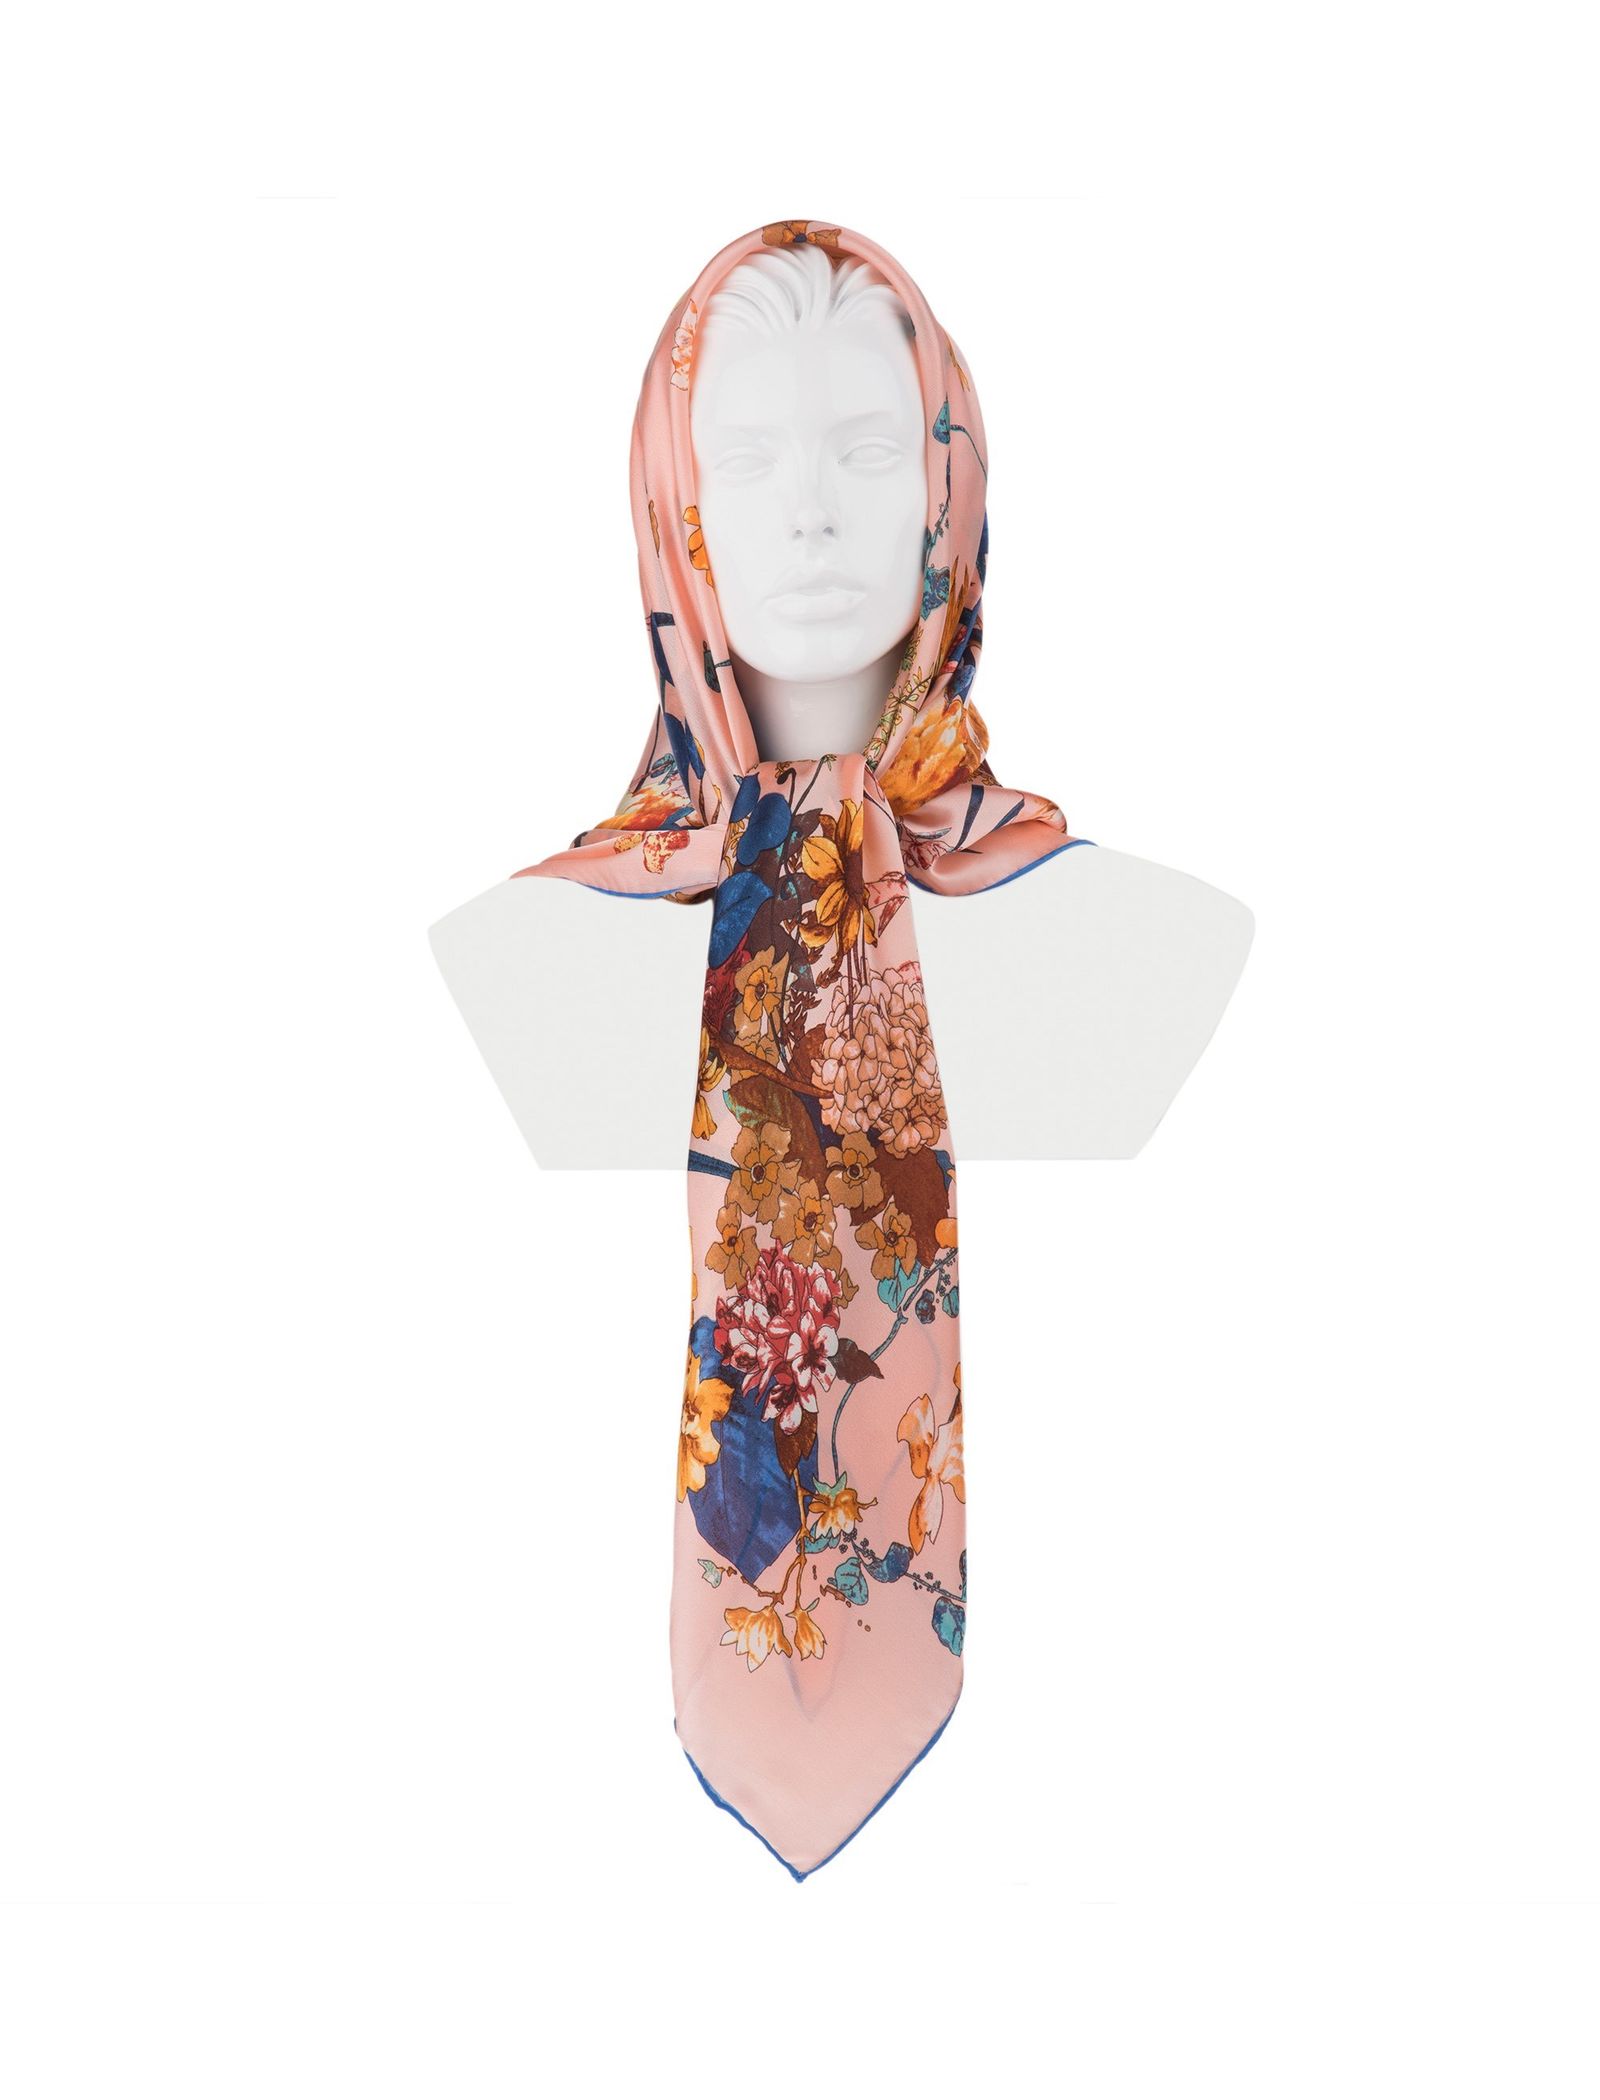 روسری ابریشمی زنانه - رزتی - صورتي - 1